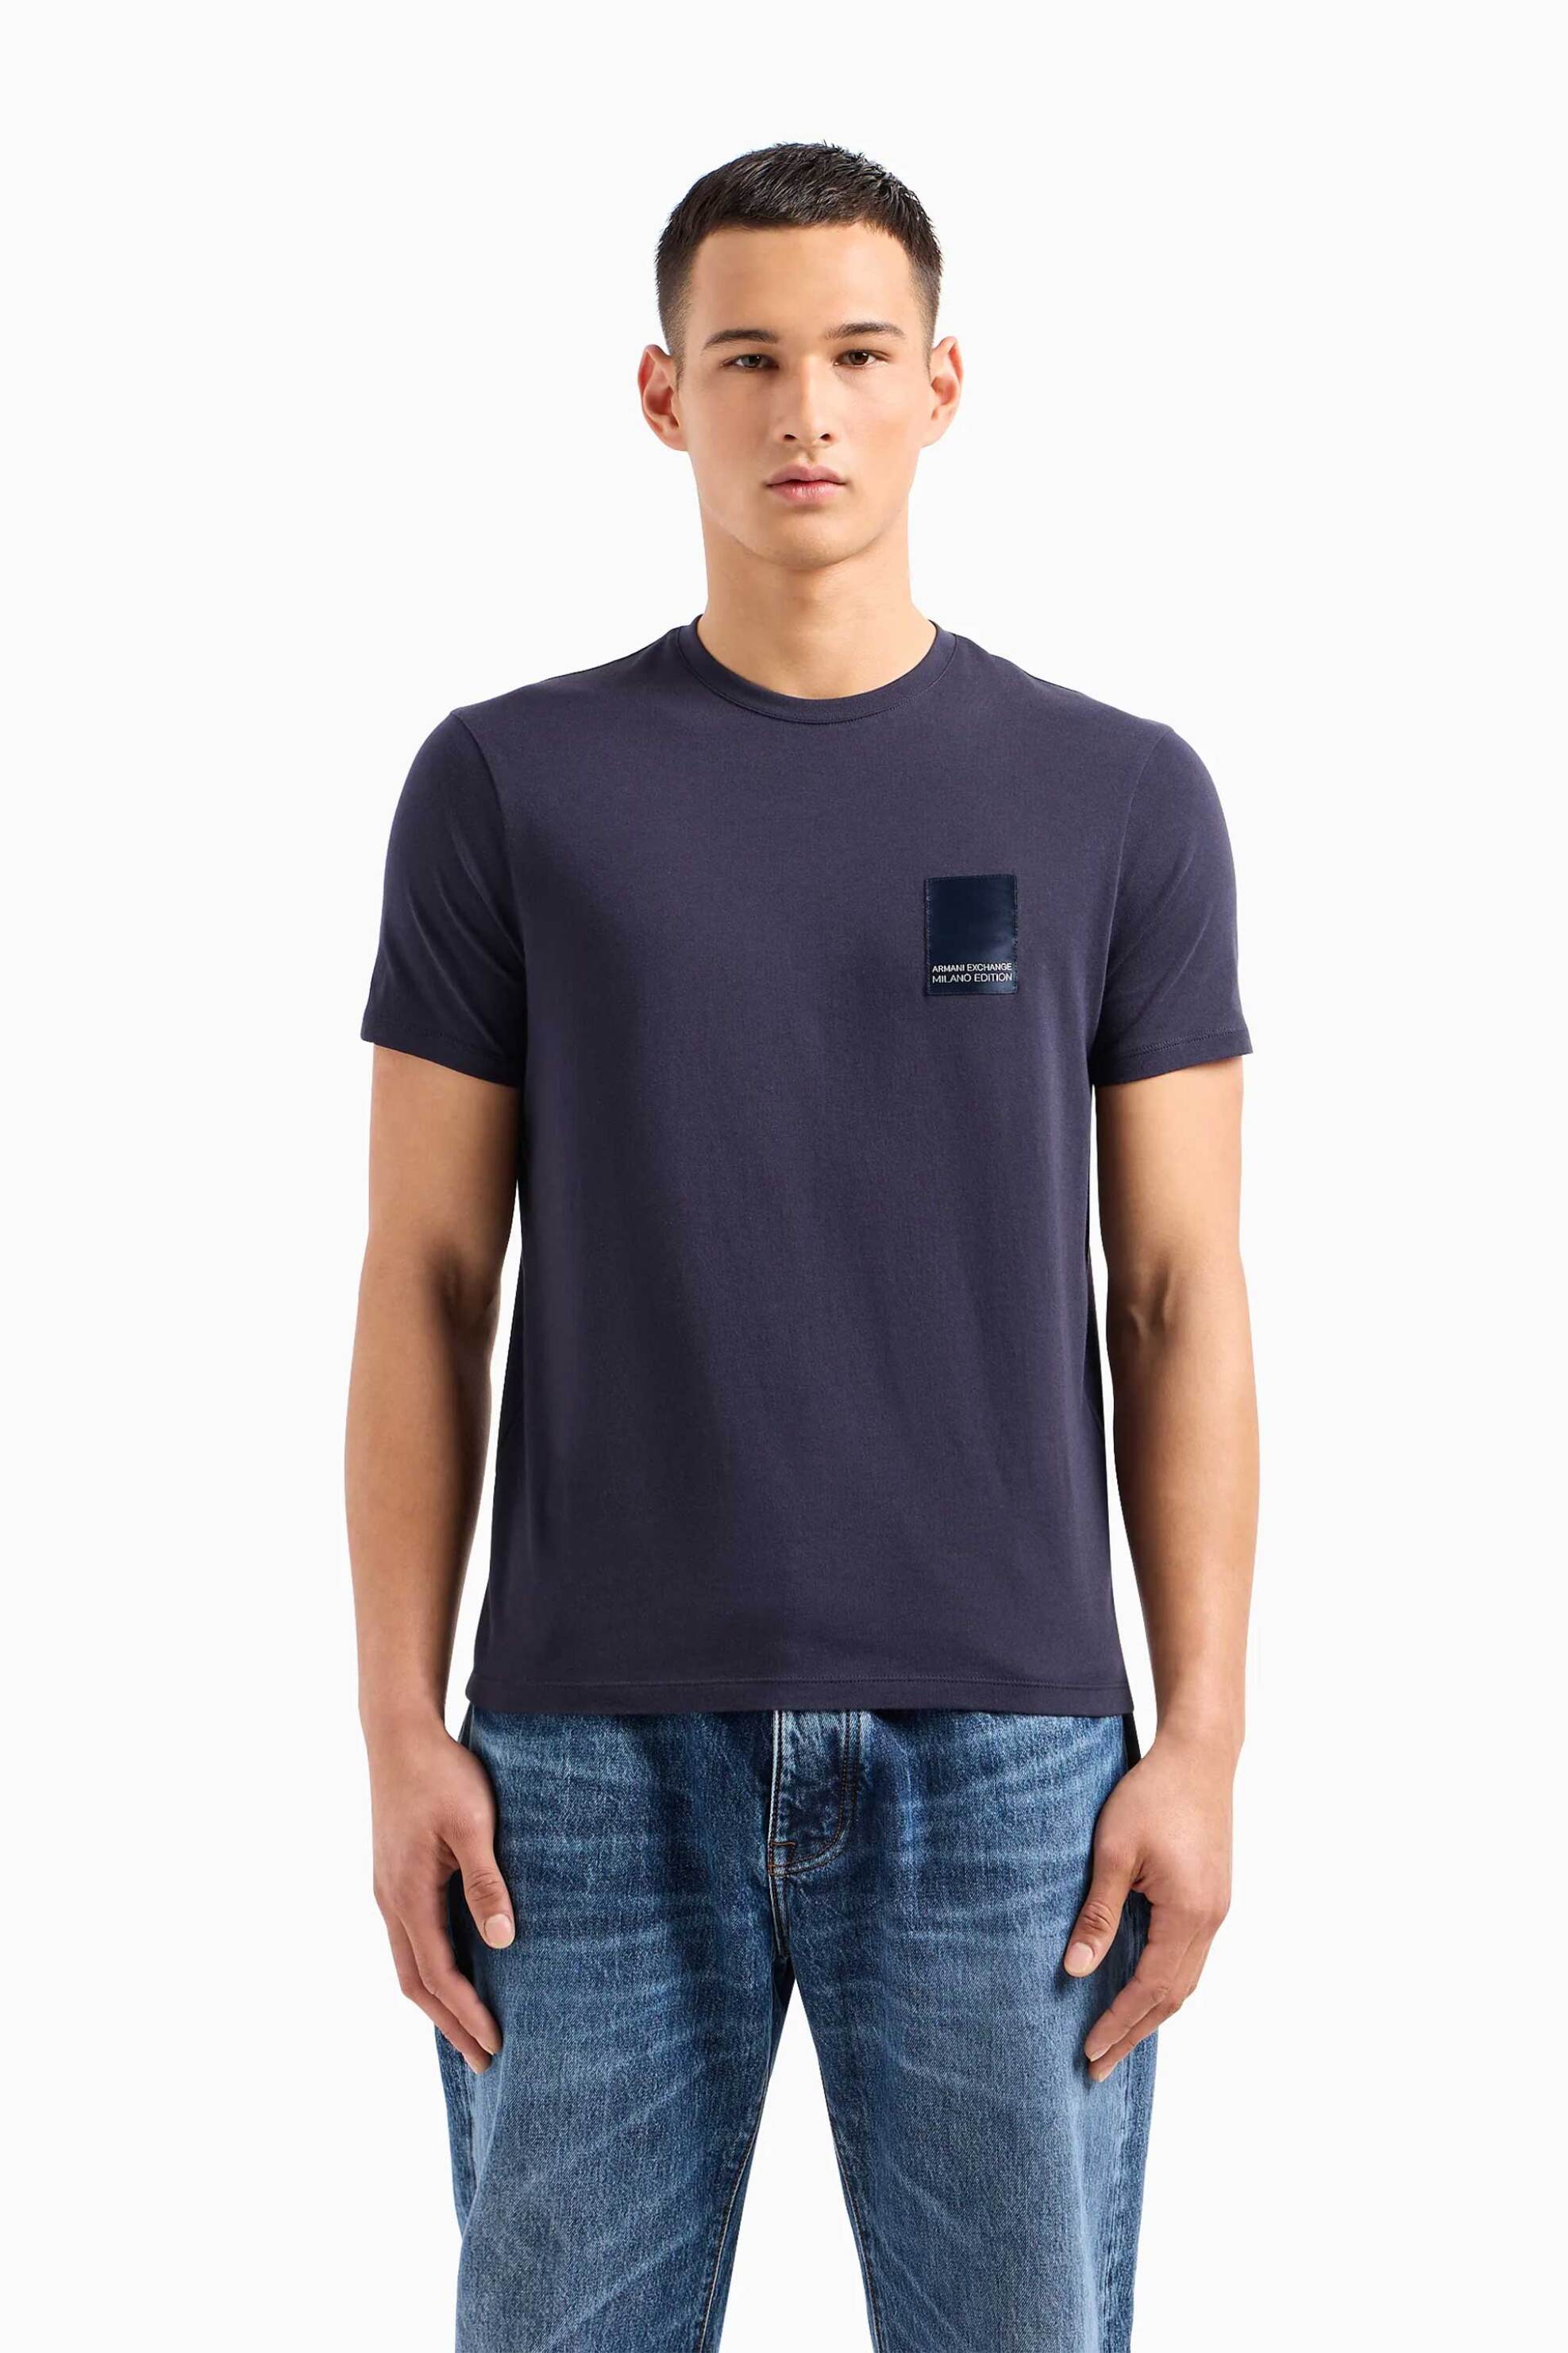 Ανδρική Μόδα > Ανδρικά Ρούχα > Ανδρικές Μπλούζες > Ανδρικά T-Shirts Armani Exchange ανδρικό T-shirt με contrast logo patch Regular Fit - 3DZTHMZJ8EZ Μπλε Σκούρο